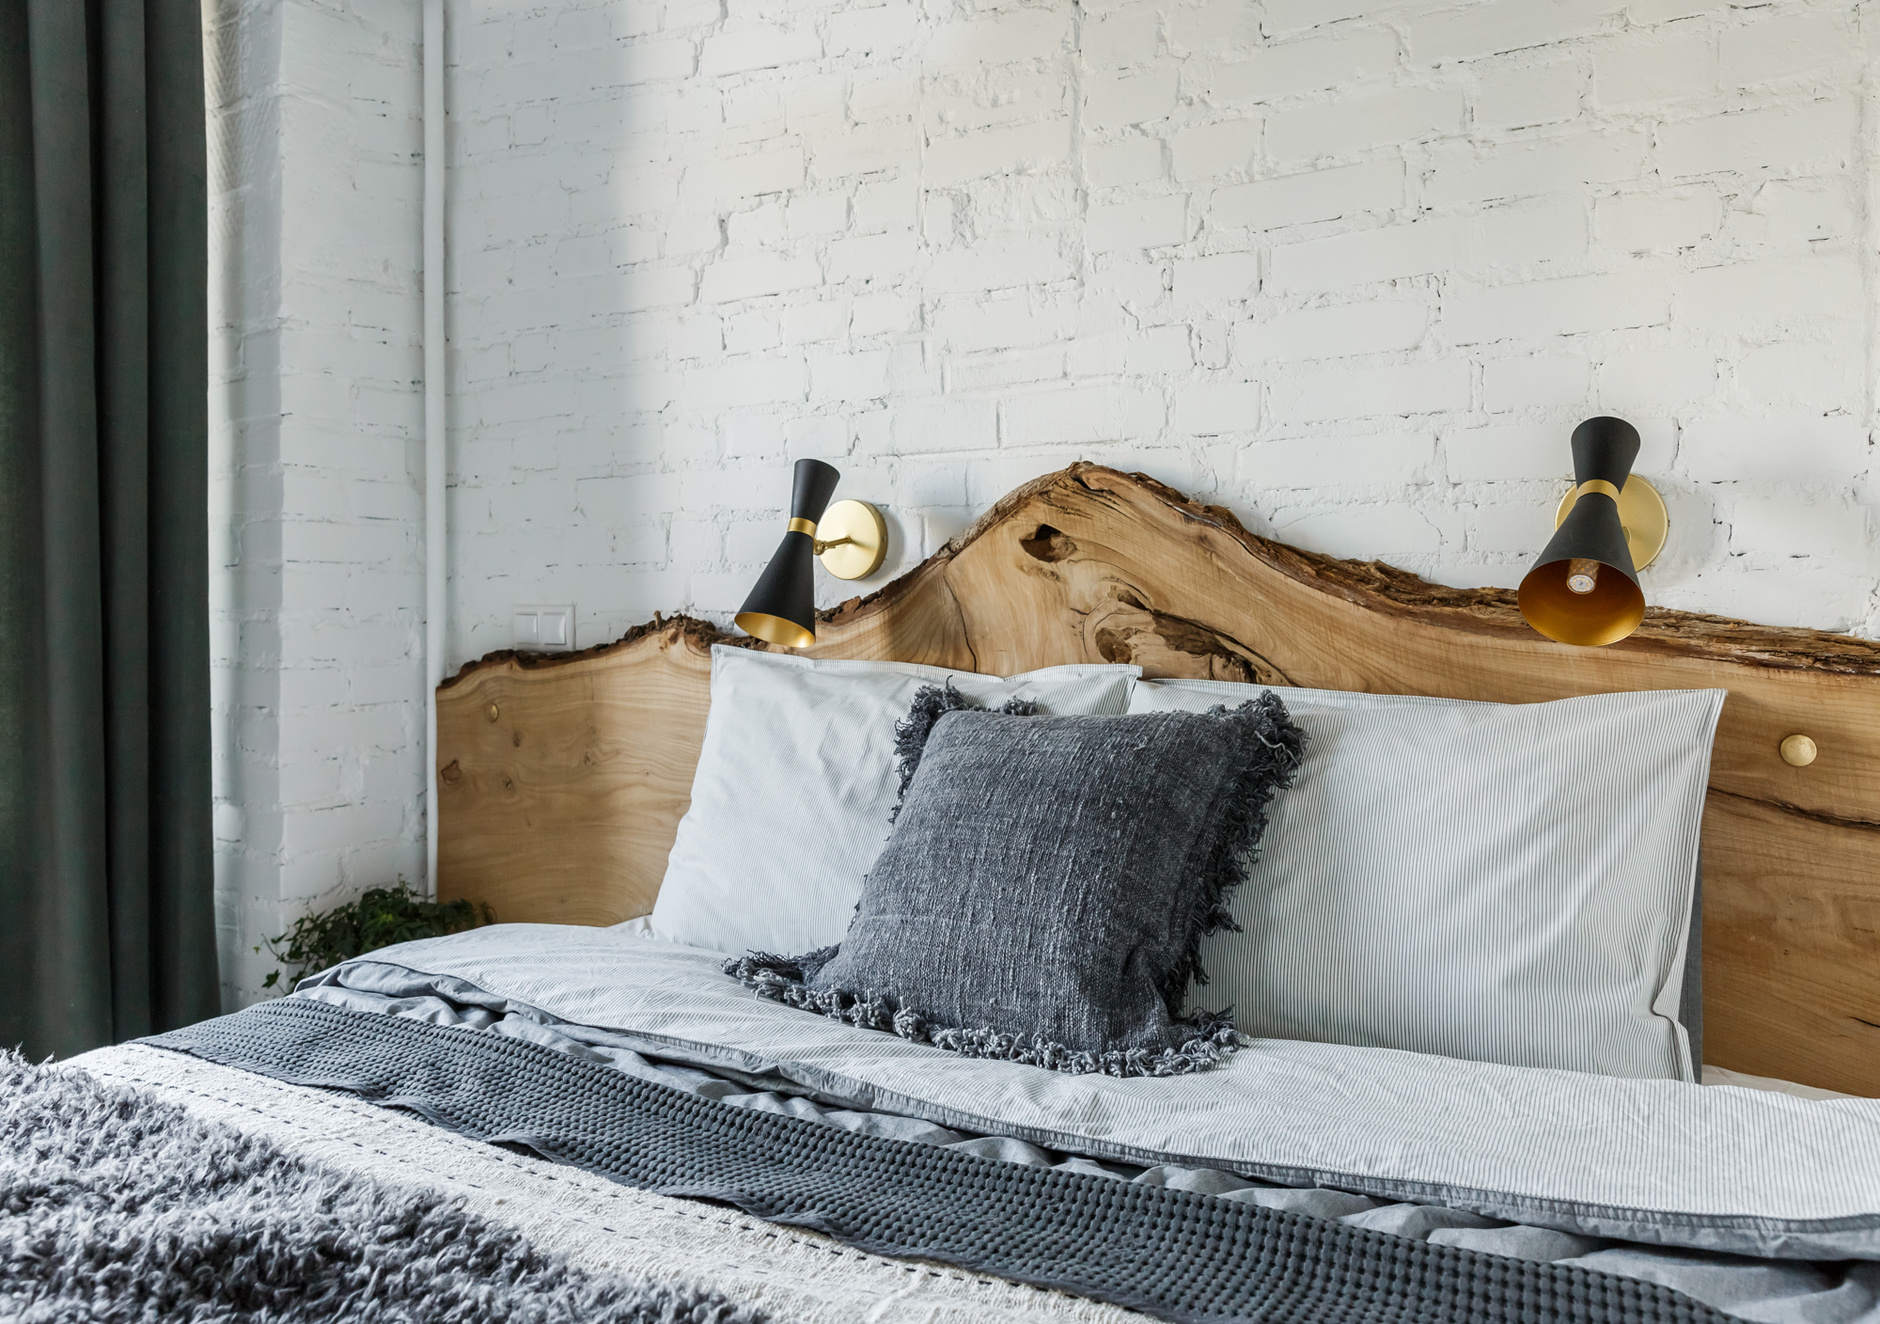 Căn phòng khiến người ta mê mẩn bởi kiểu dáng như tấm gỗ tự nhiên của thân cây đưa vào đầu giường, phía sau là tường gạch sơn trắng càng làm tôn lên vẻ đẹp của nó.